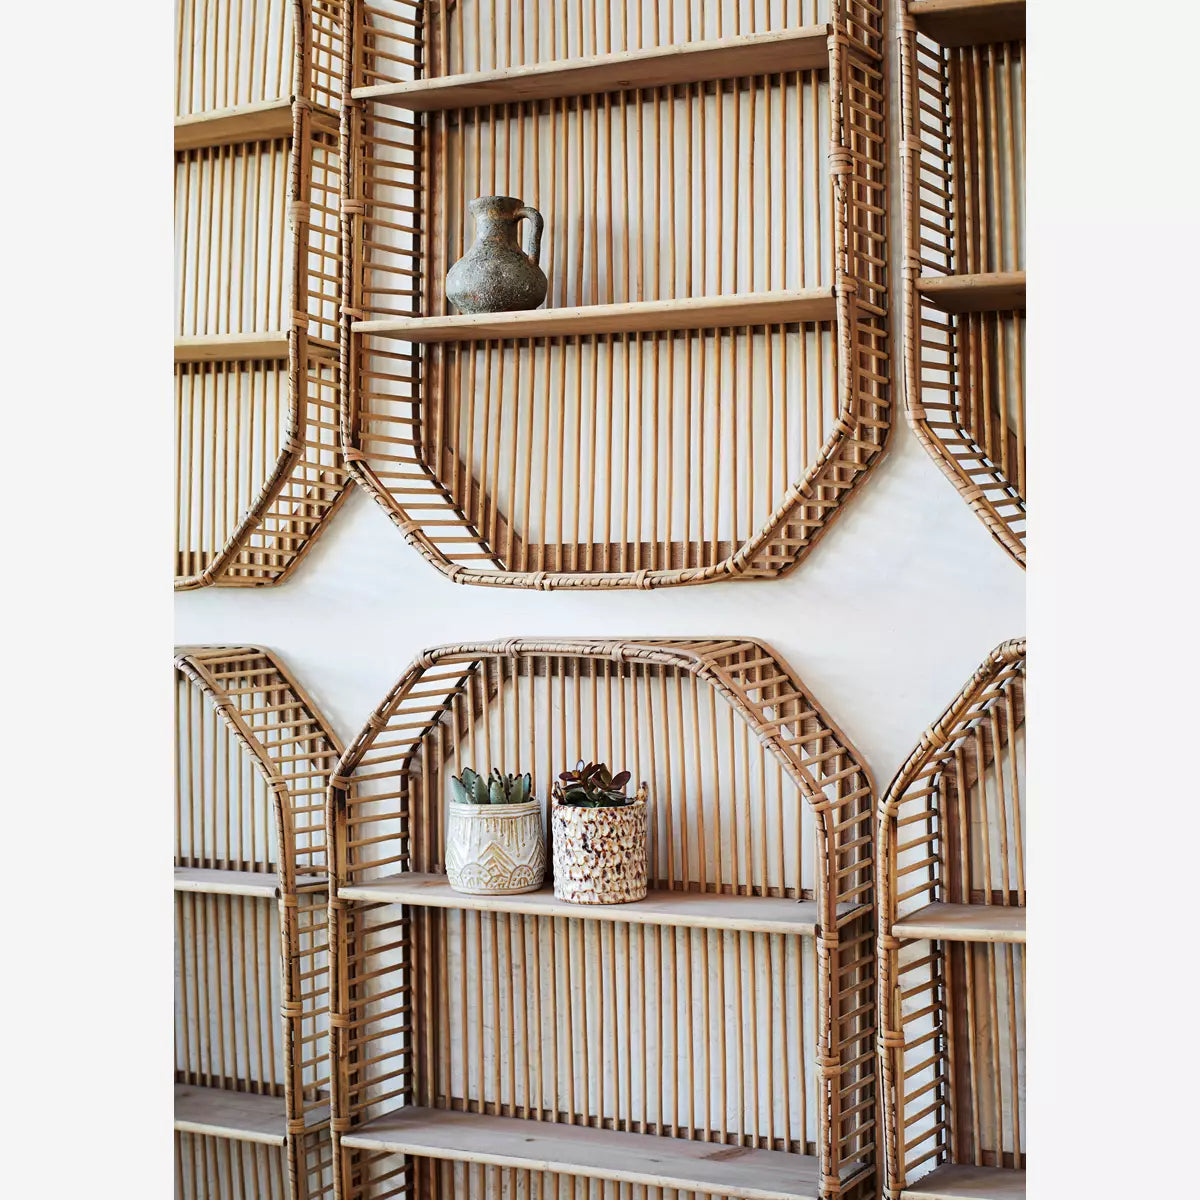 Rectangular bamboo shelf